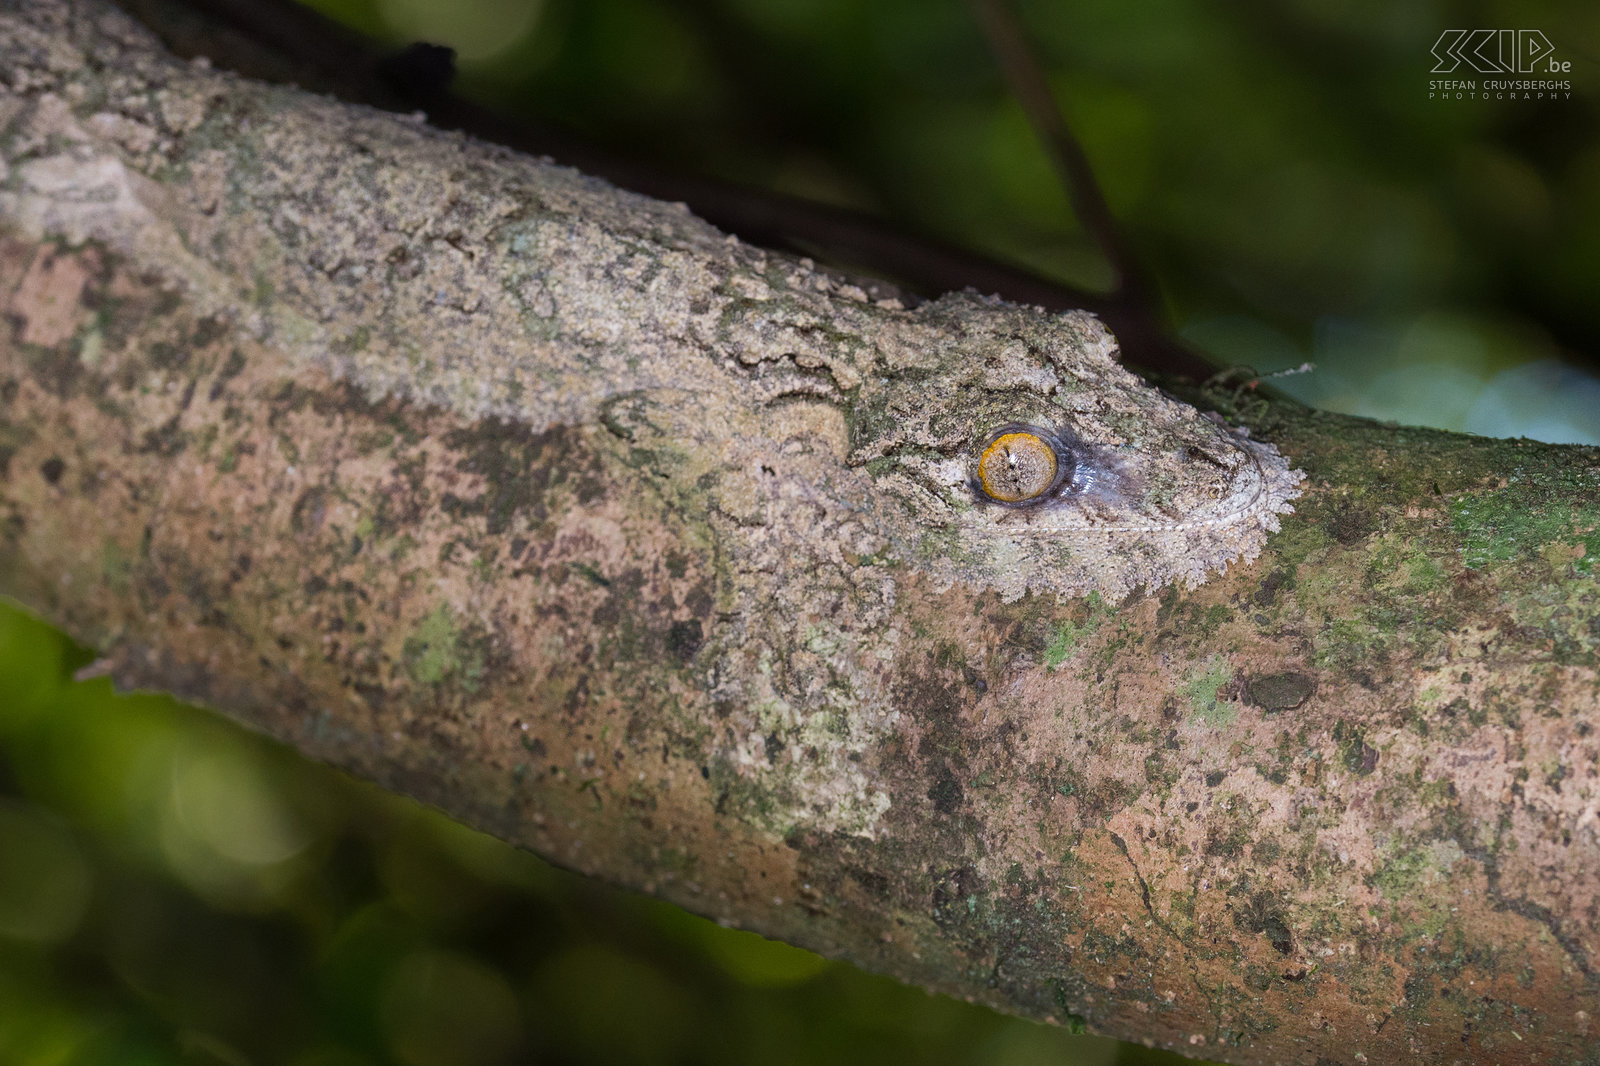 Ranomafana - Bladstaartgekko  Uroplatus sikorae (Mossy leaf-tailed gecko) is een hagedis van de bladstaartgekko familie. Deze fascinerende nachtelijke gekko is endemisch in Madagaskar. Hij is 15 tot 20 centimeter lang. Deze gekko kan zijn huidskleur veranderen om zich aan zijn omgeving aan te passen en hij bezit huidflappen die uitgeklapt worden om z’n lichaamsvorm te maskeren. Overdag is het bijna onmogelijk om deze super gecamoufleerde gekko te vinden maar wij hadden geluk want onze gids vond er toch eentje. Stefan Cruysberghs